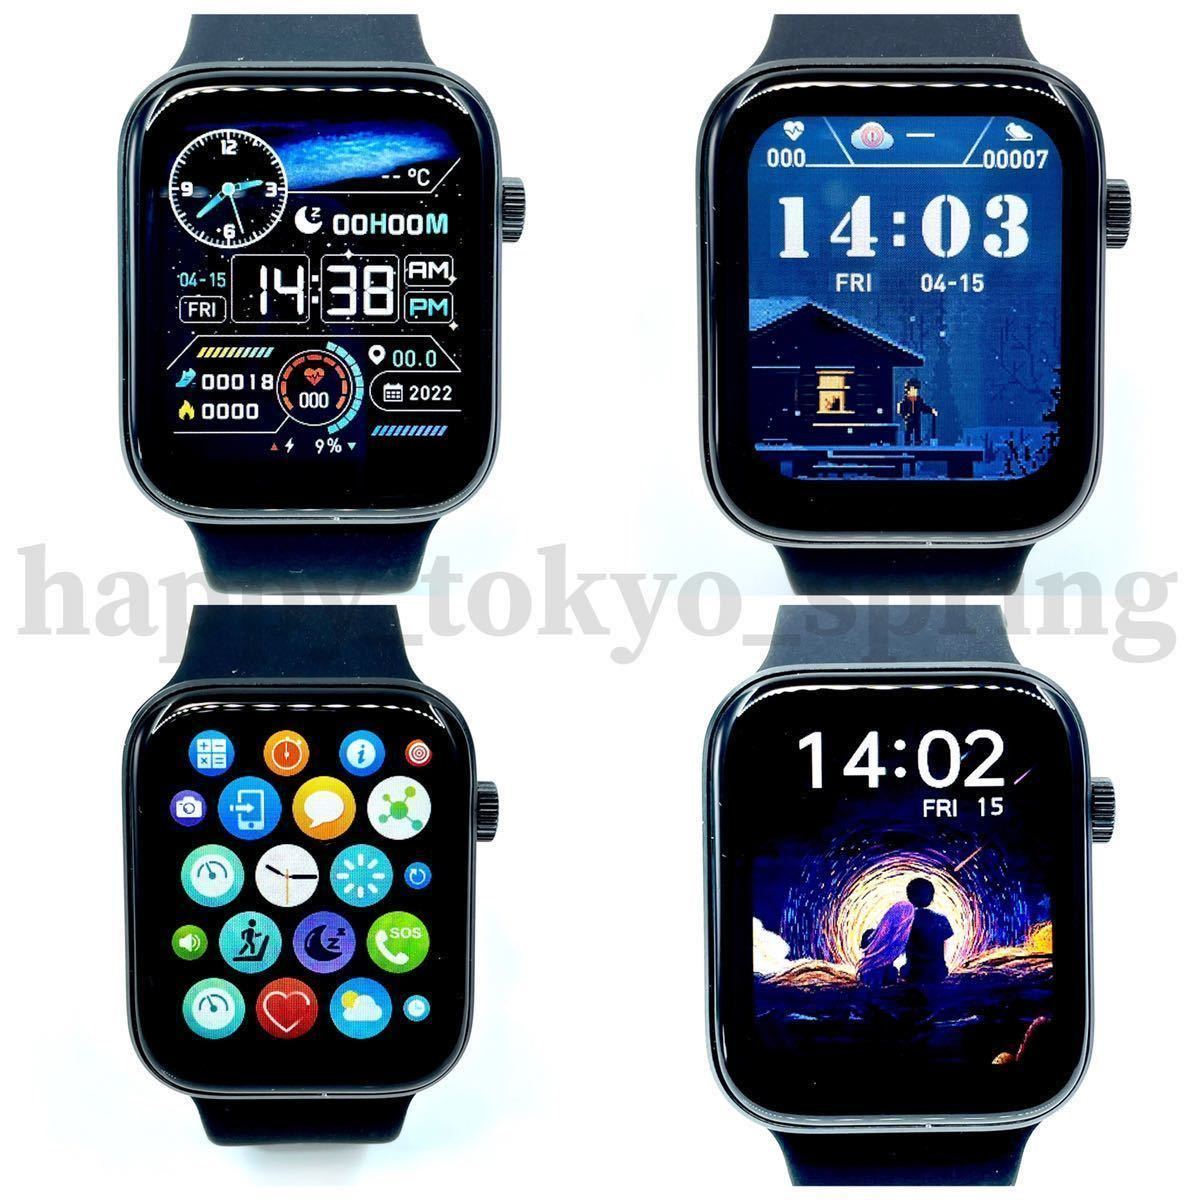 [2023 новейший ] японский язык отображать новый товар смарт-часы многофункциональный Watch7 здоровье спорт водонепроницаемый . средний кислород android кровяное давление сердце .iphone Apple шагомер сон.